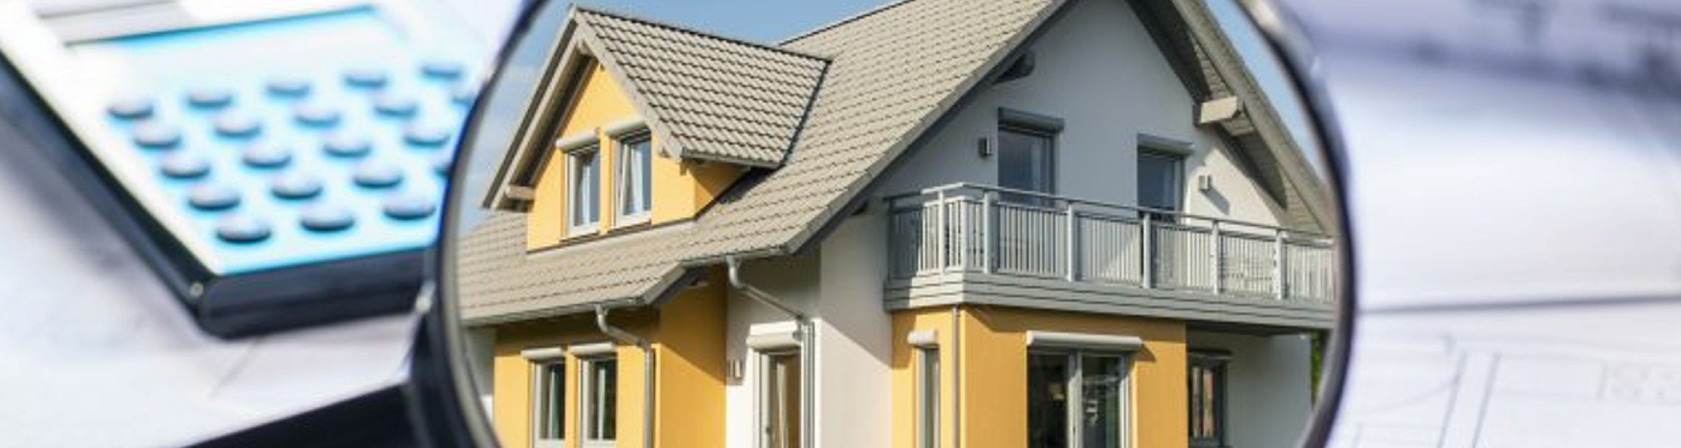 determiner prix bien immobilier suisse